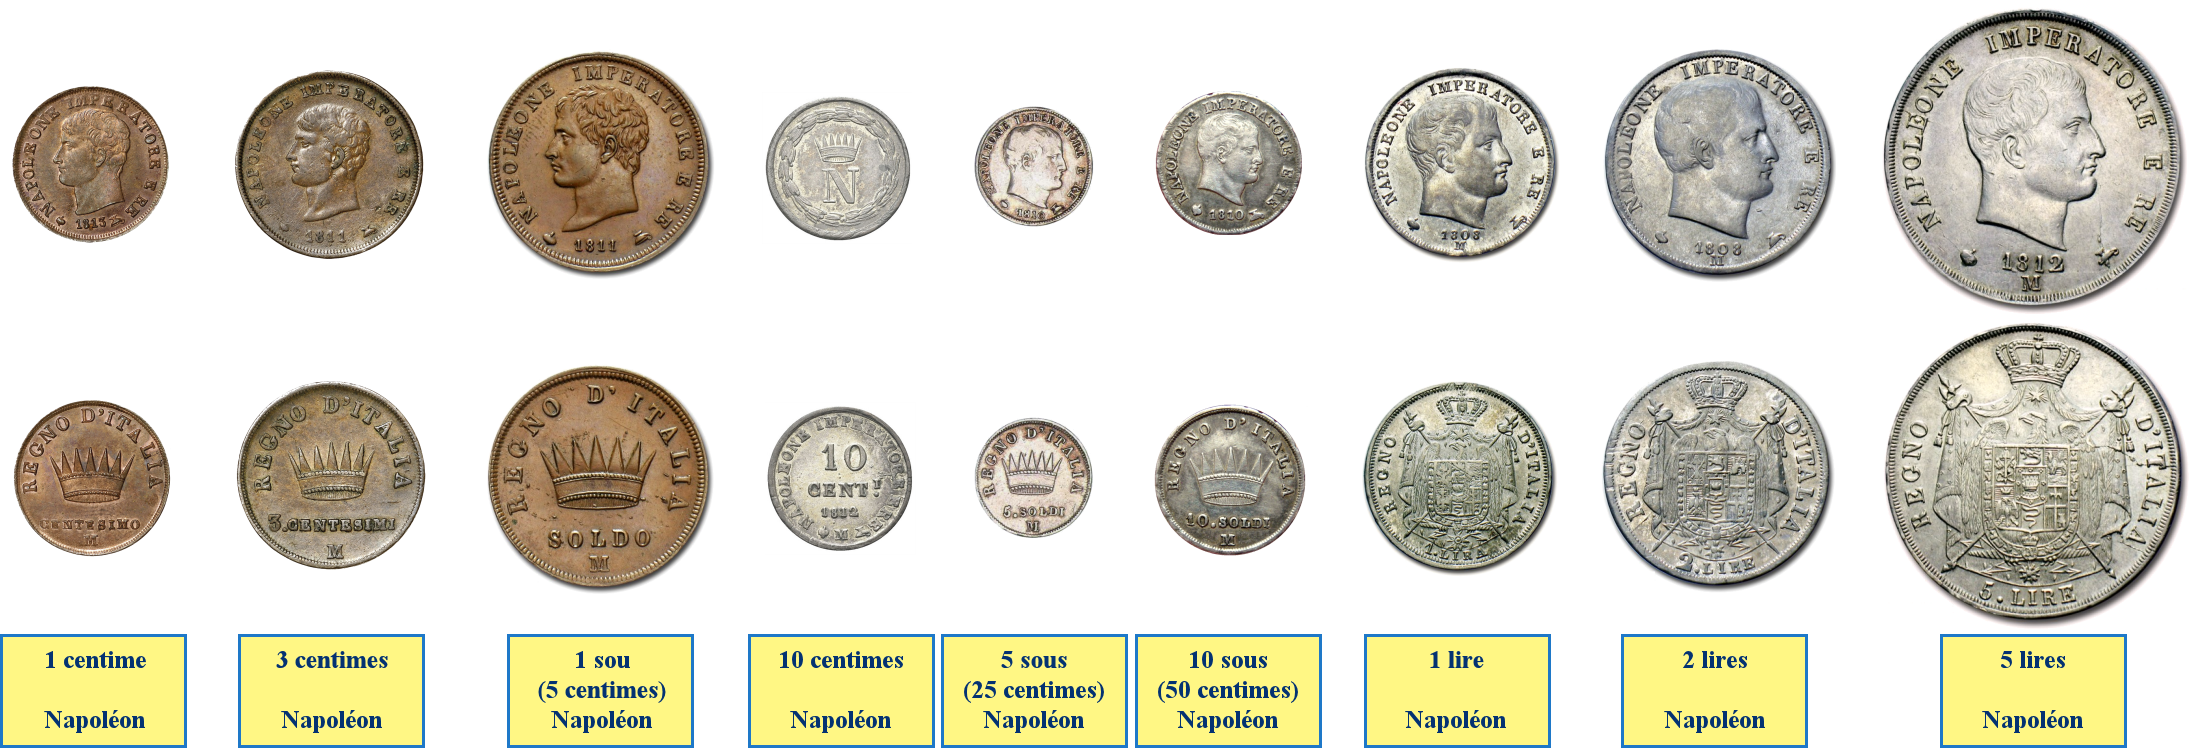 Photos de pièces de monnaies du Royaume Napoléonien d'Italie